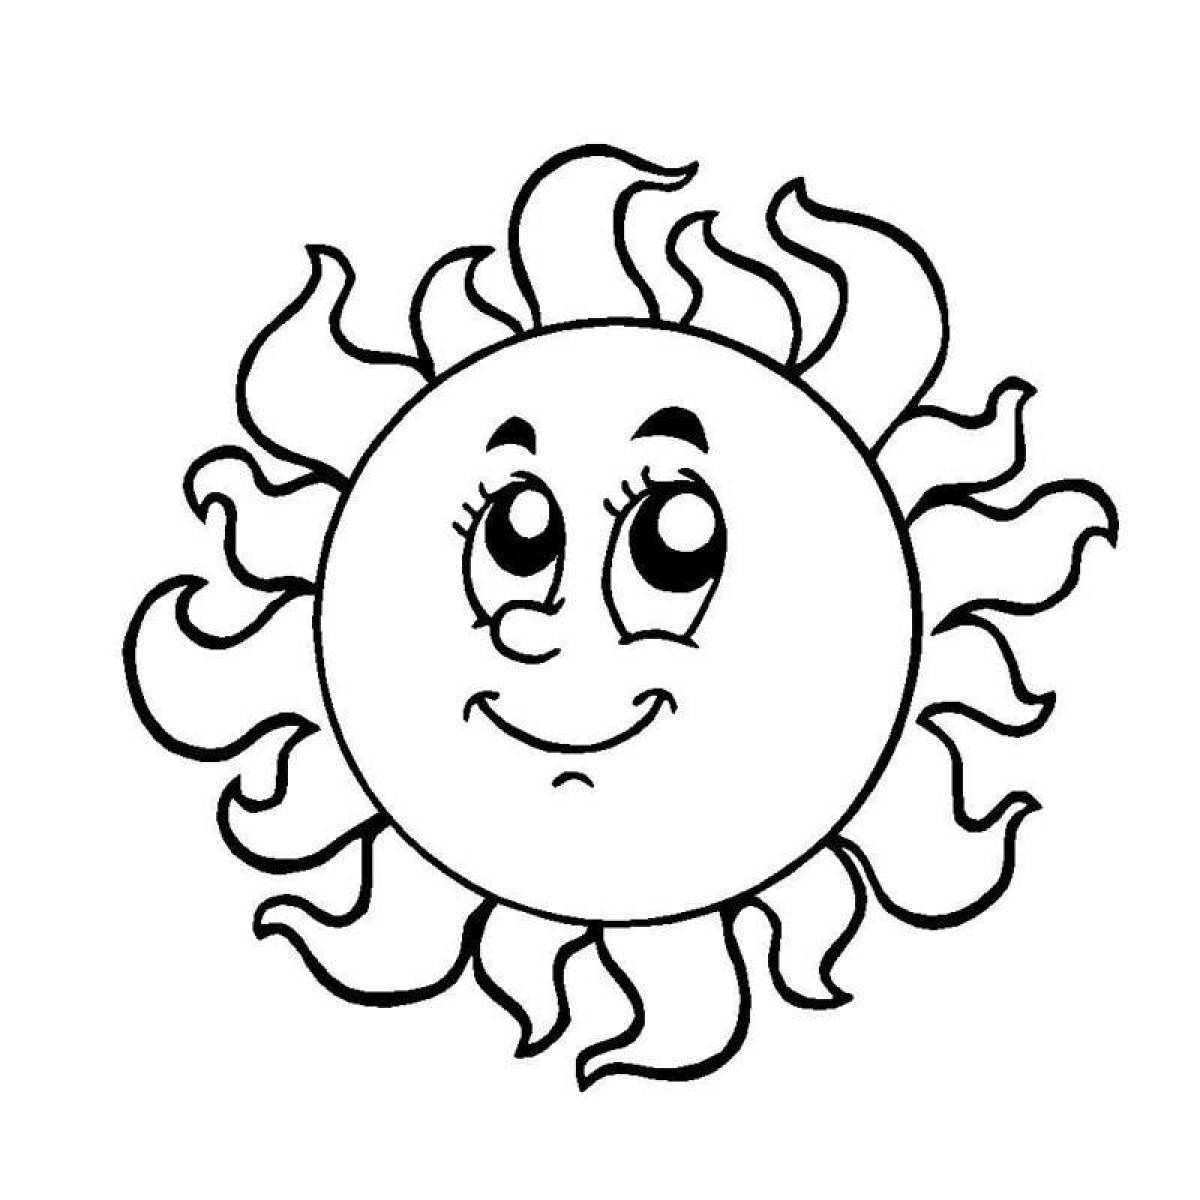 Joyful coloring sun for kids